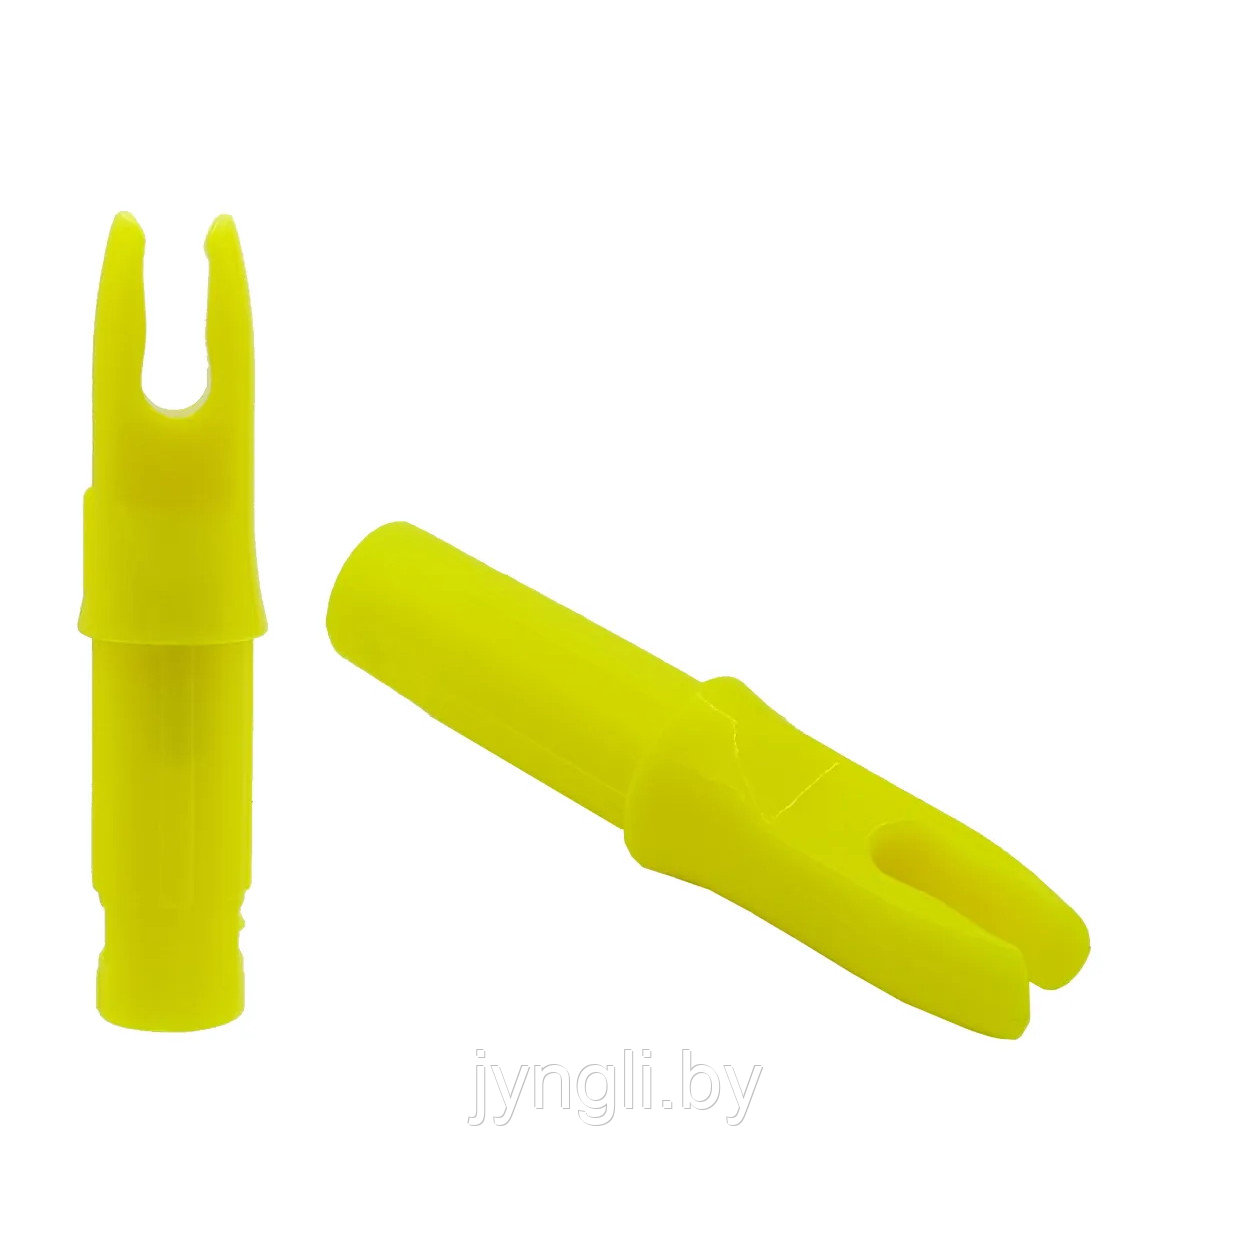 Хвостовик Centershot 6.2 мм для лучных стрел (желтый)